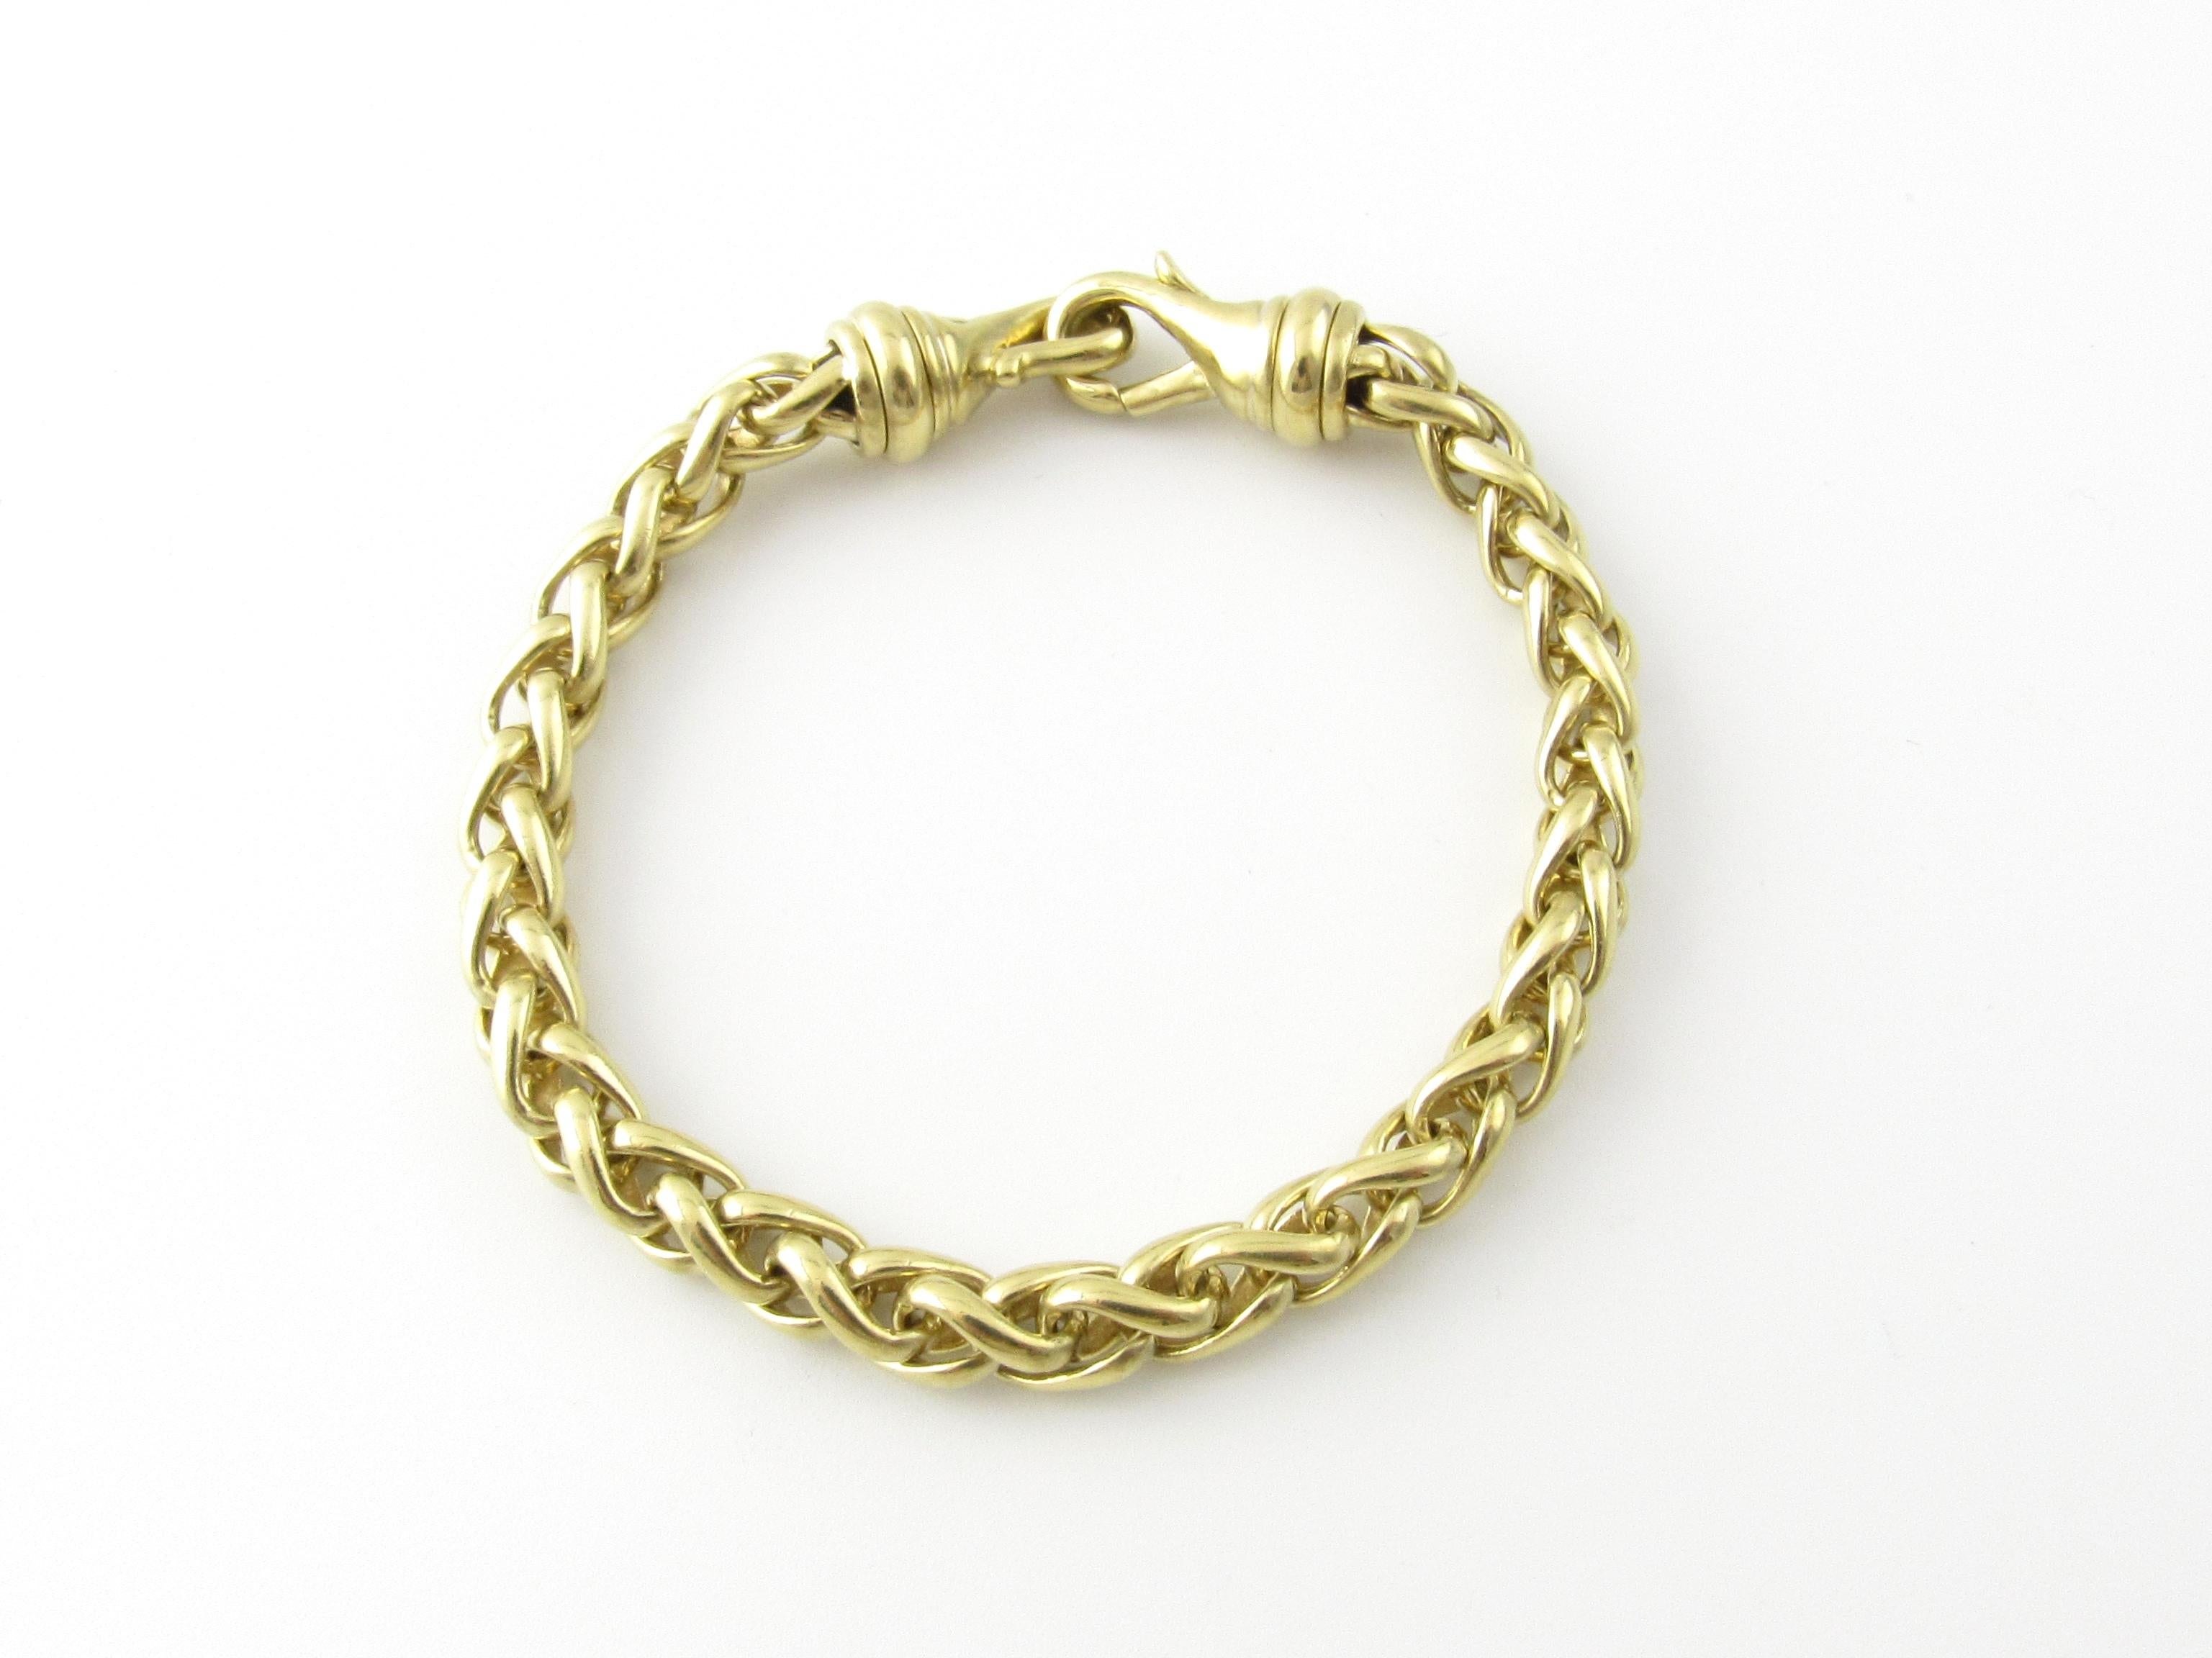 David Yurman 18K Yellow Gold Wheat Chain Bracelet

This authentic David Yurman bracelet is approx. 6.75